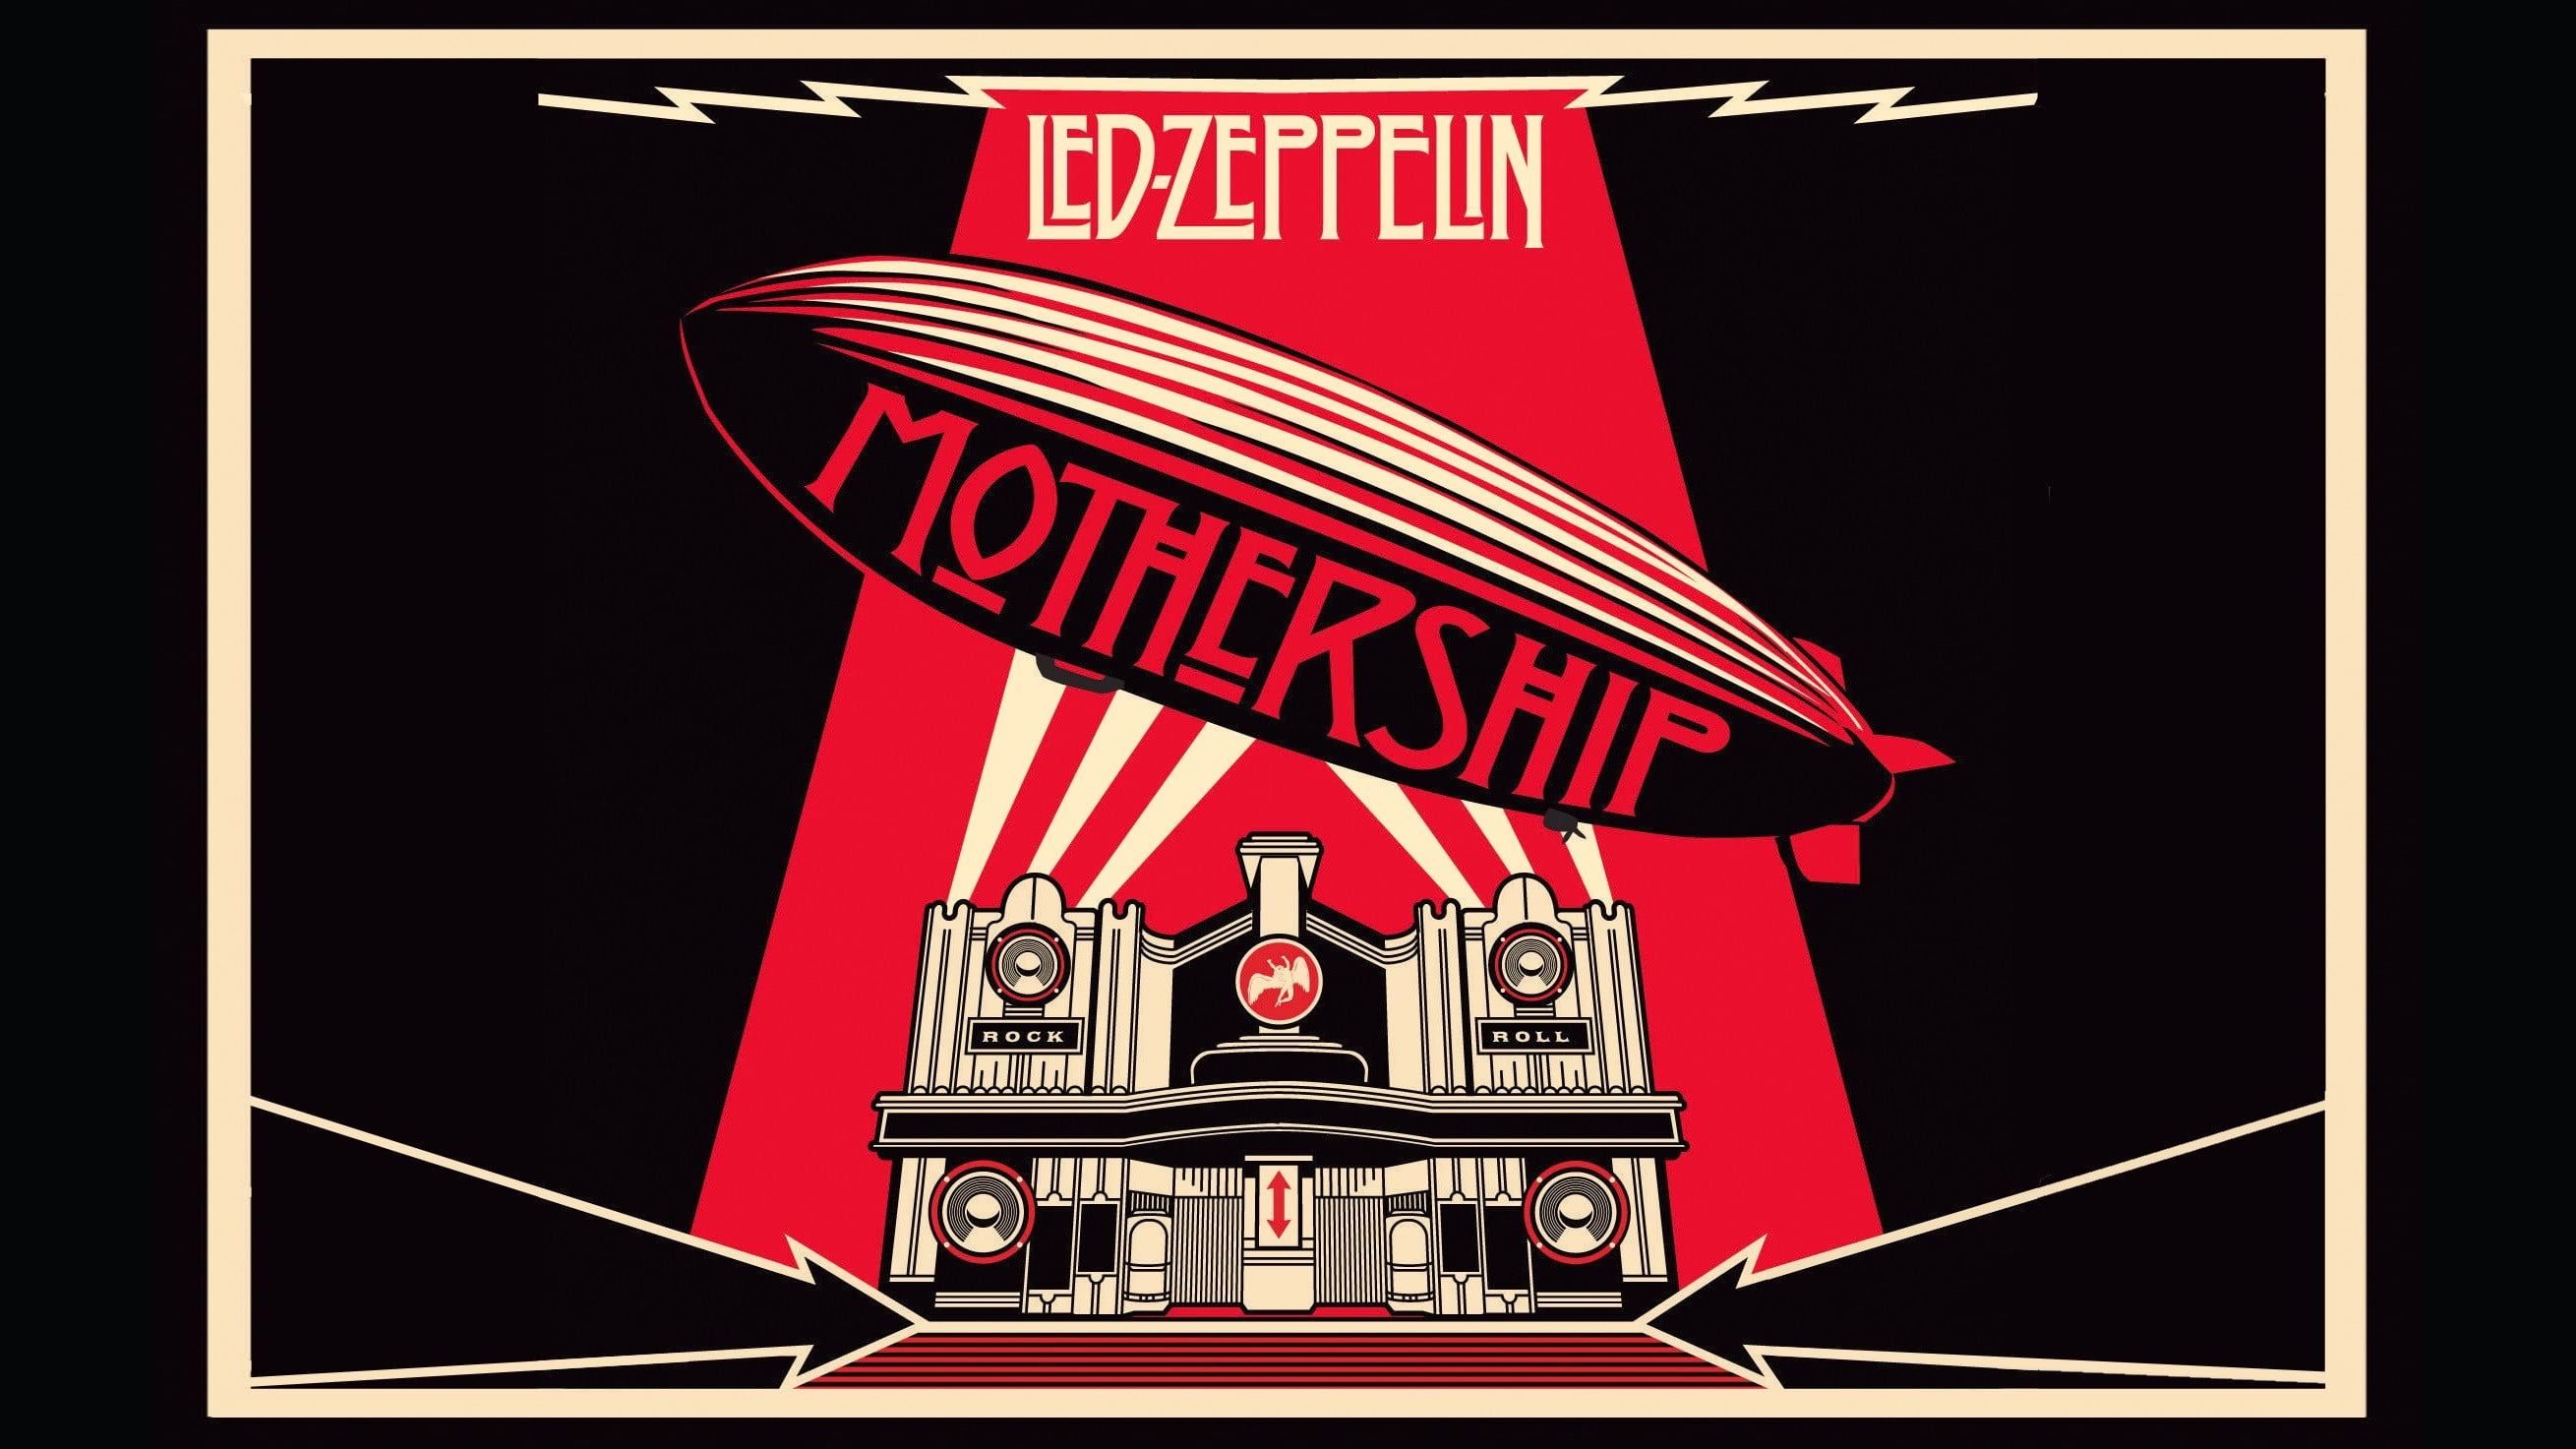 Led Zeppelin Wallpaper Hd - HD Wallpaper 